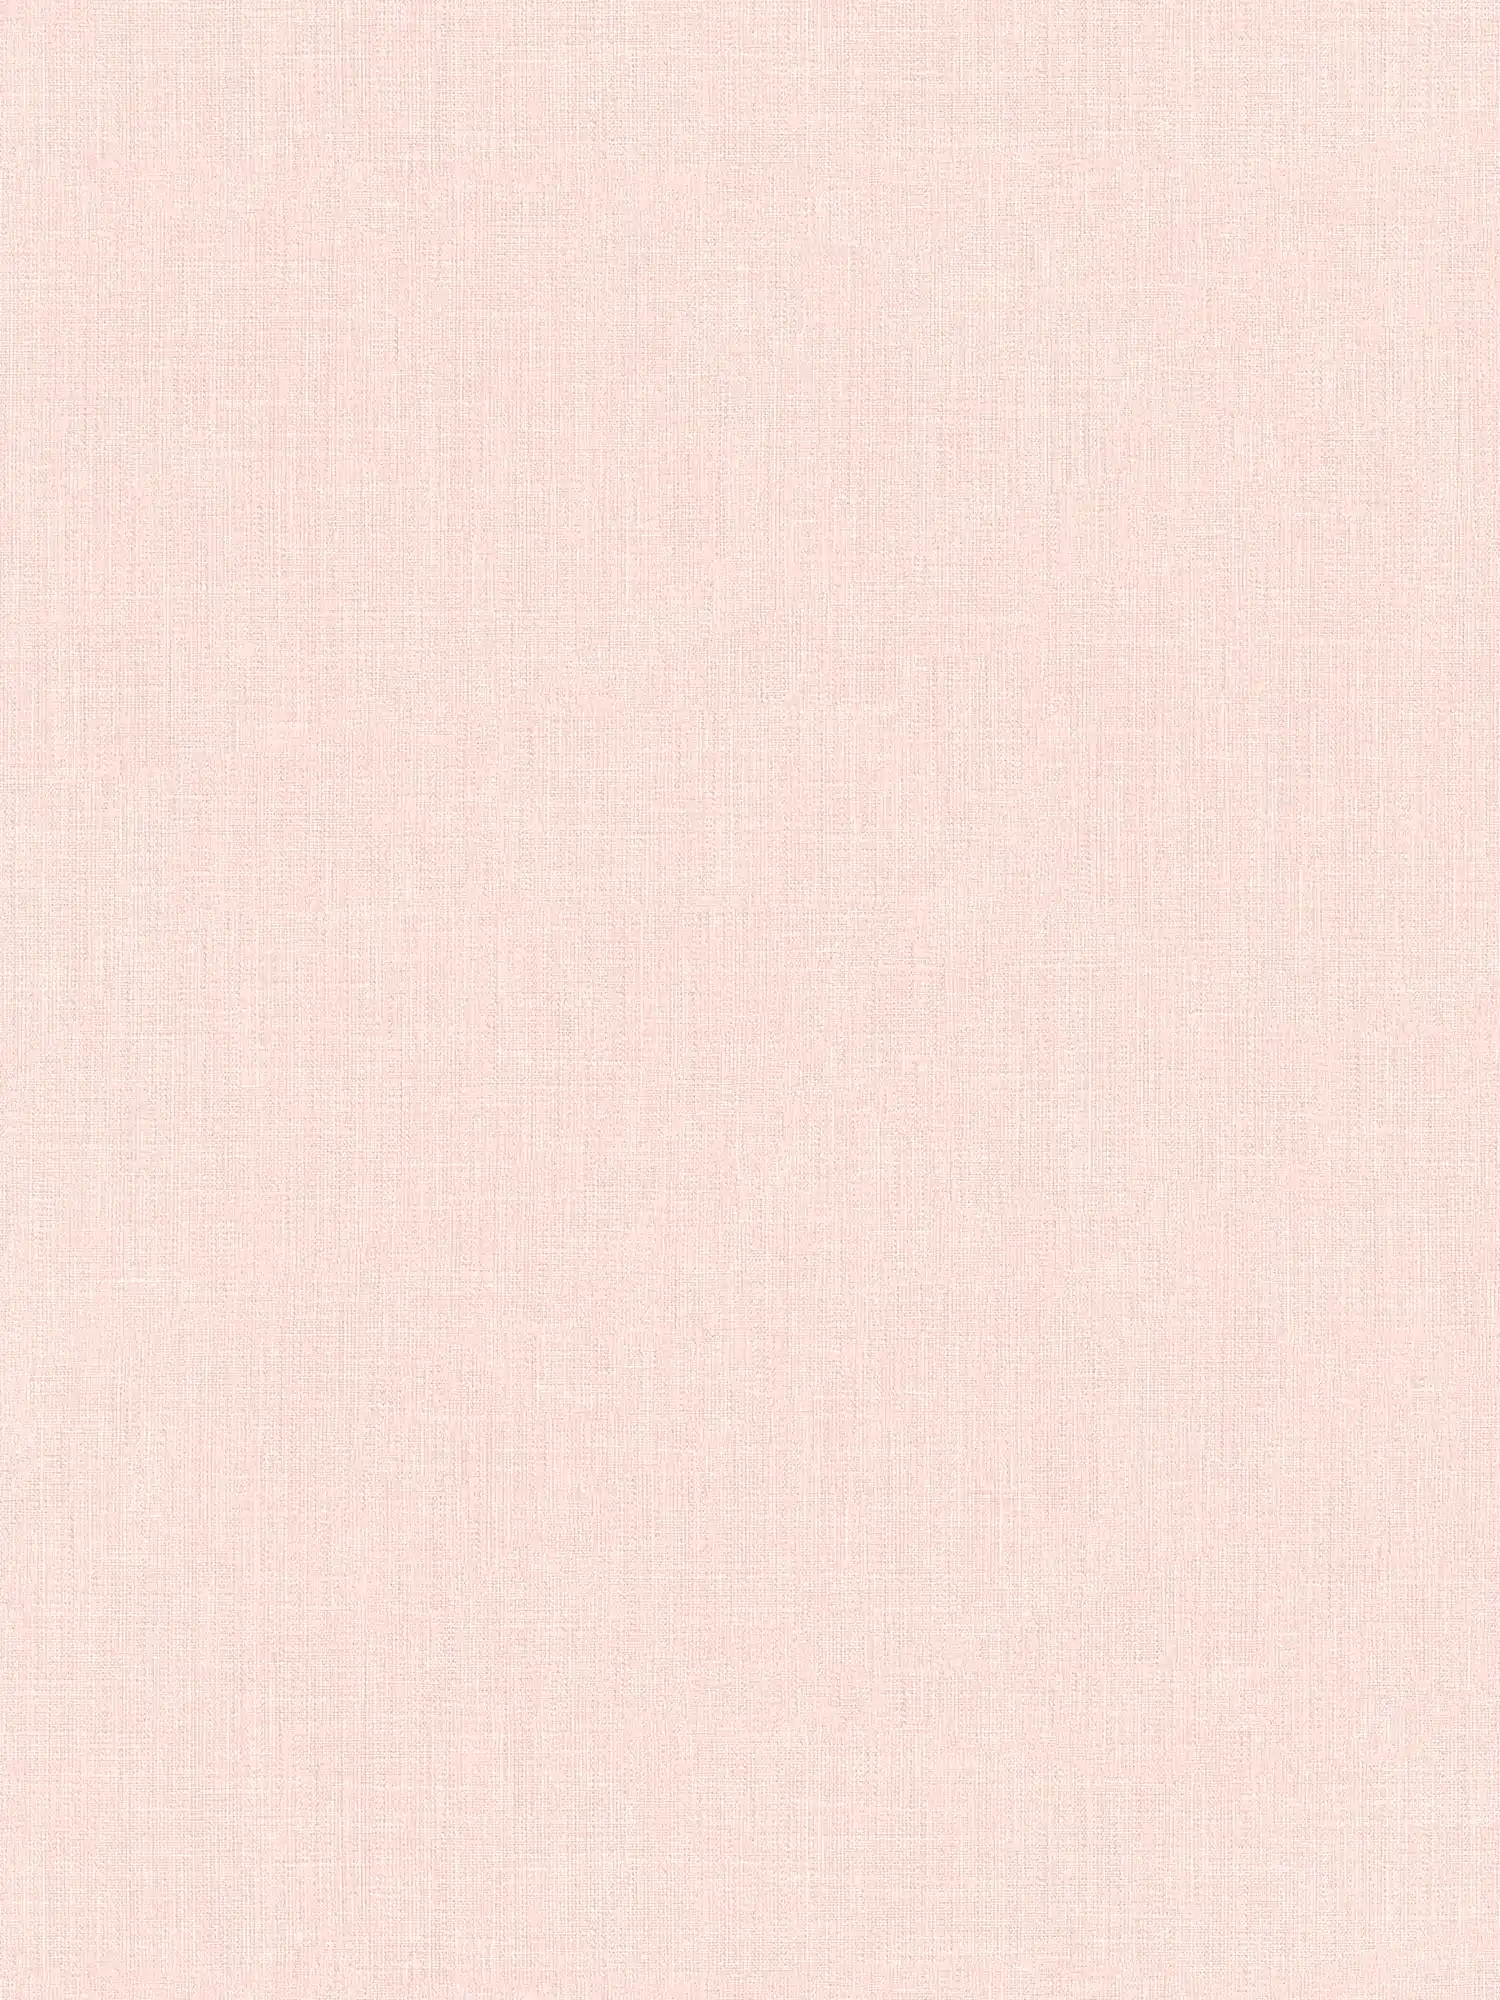 Carta da parati rosa struttura in lino tinta unita pastello
